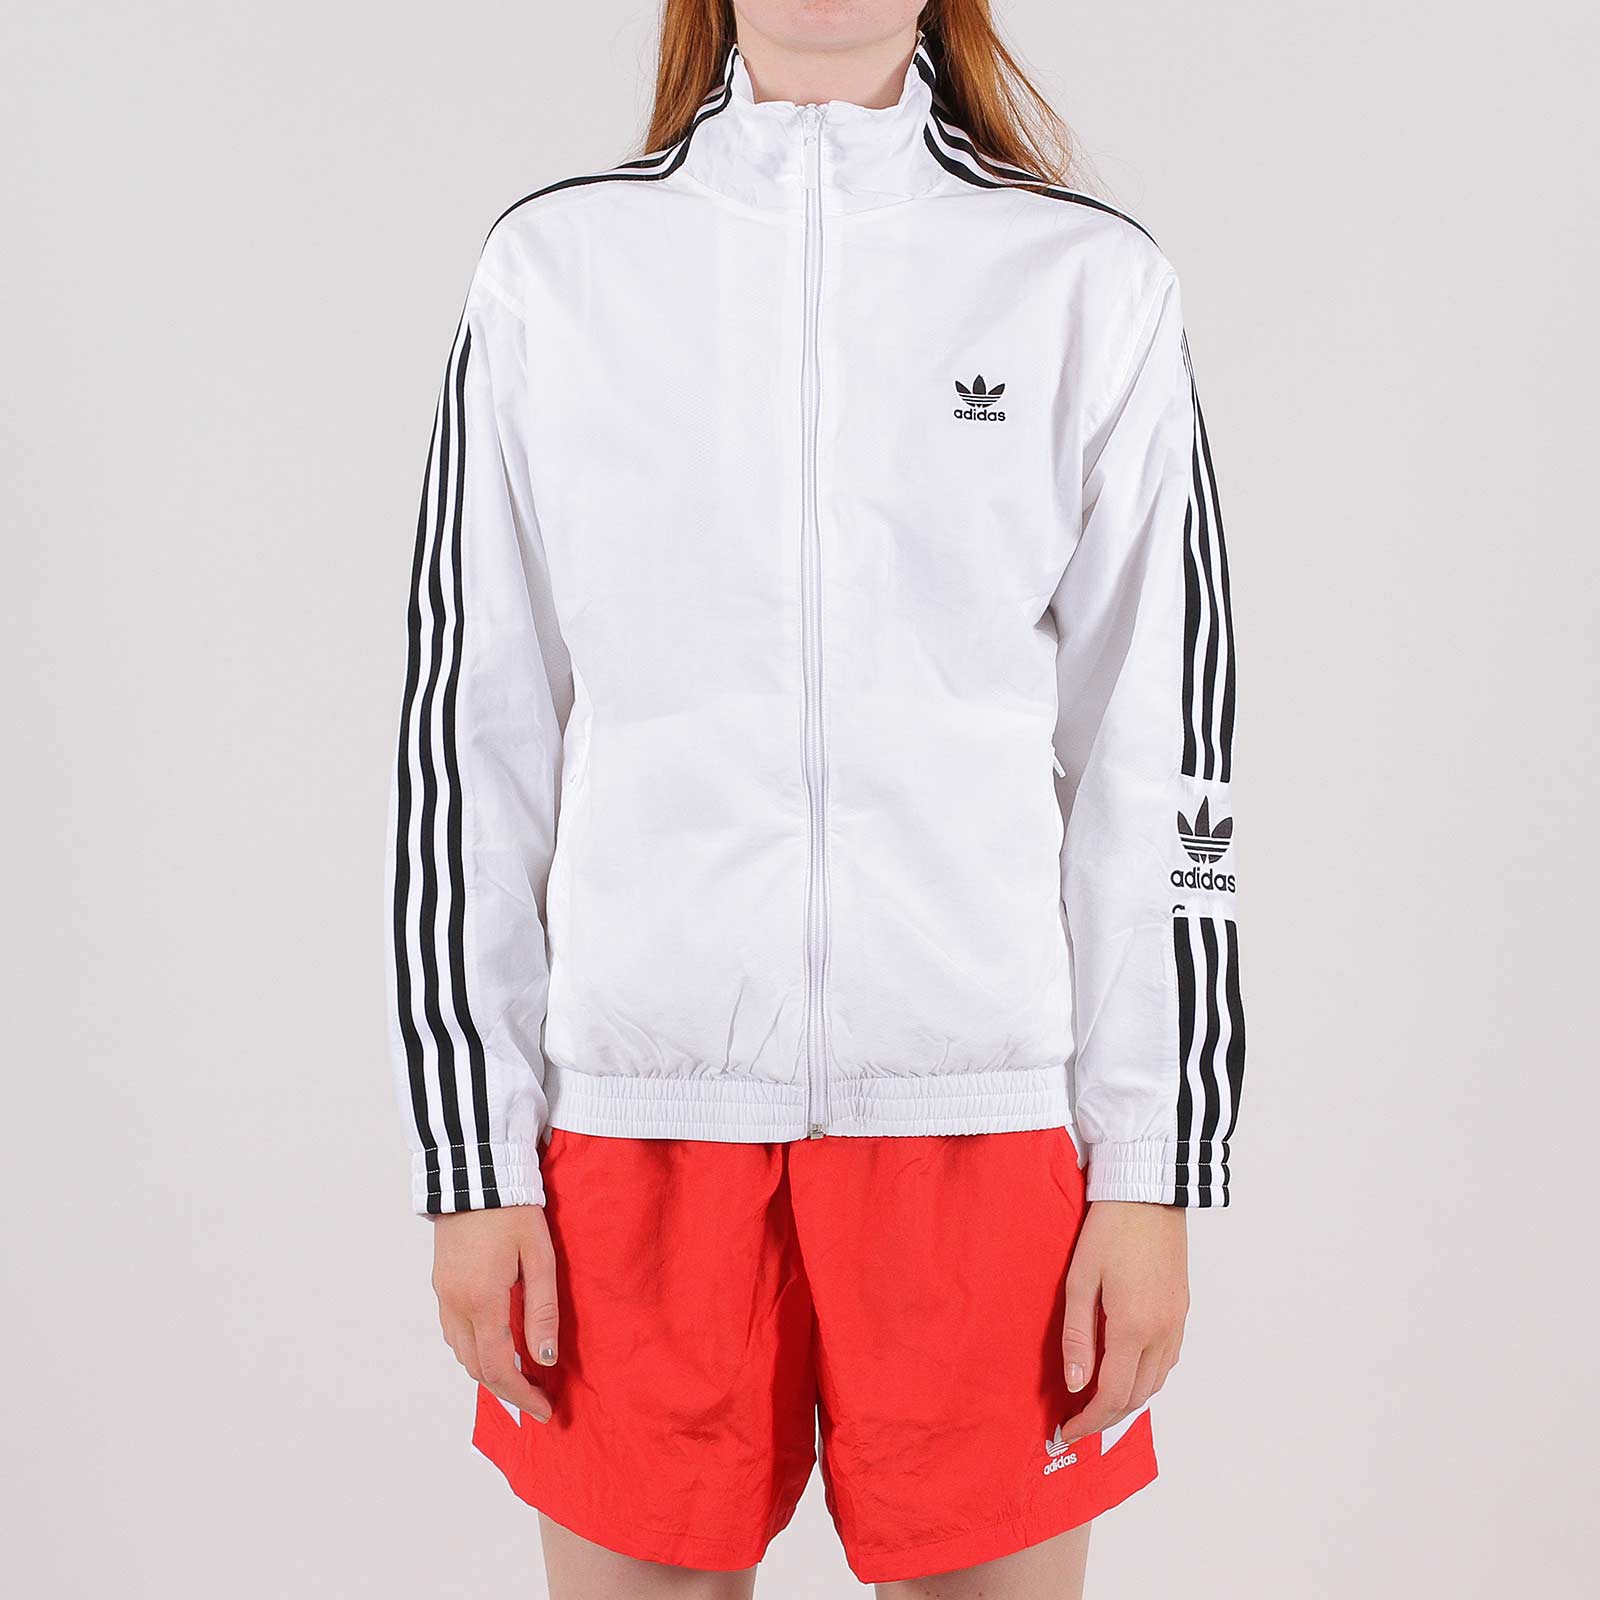 adidas nylon track jacket